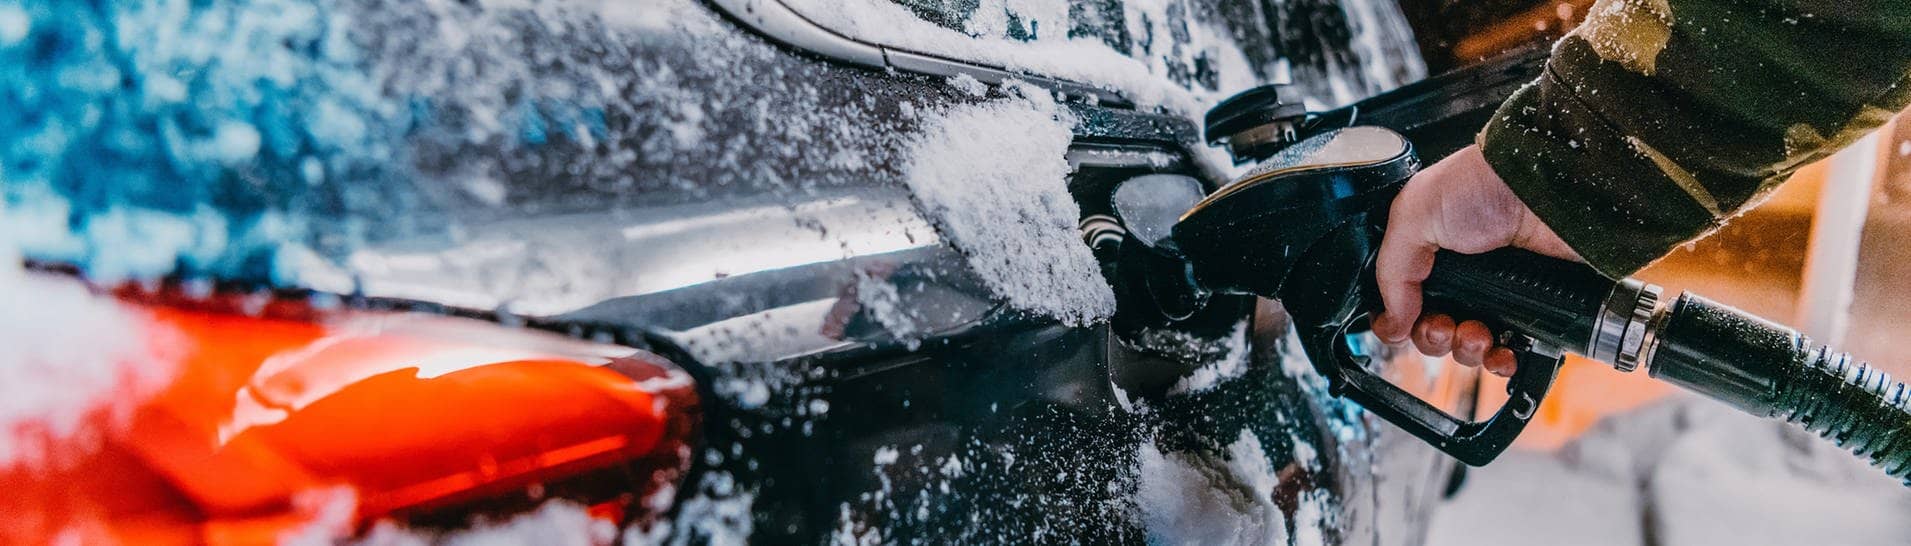 Ein schwarzes Auto wird im Winter an einer Tankstelle betankt. Es fallen Schneeflocken. Das Foto soll den erhöhten Spritverbrauch im Winter, beispielsweise auf dem Weg in den Skiurlaub, verdeutlichen. Wir klären, woran das liegt und welche Tipps es gibt, um die größtens Spritfresser im Winter zu vermeiden.